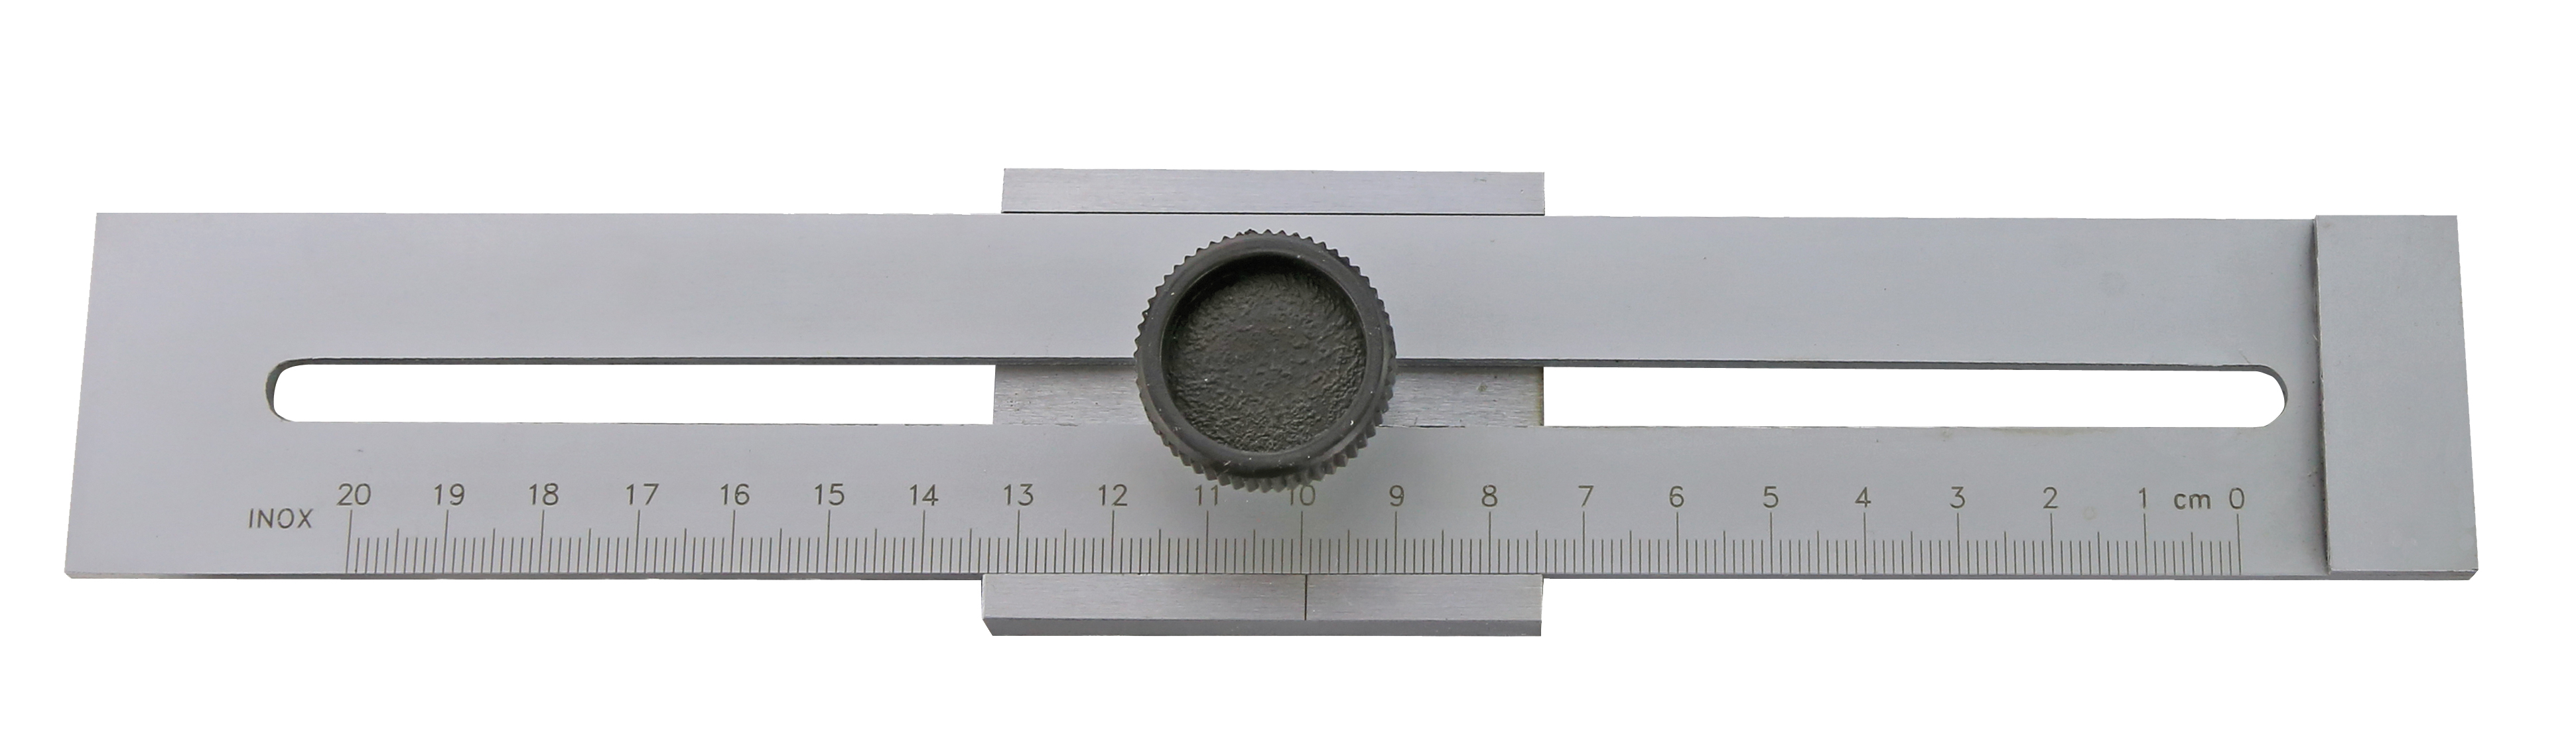 Streichmass 250mm Messlänge mit Nonius 1/10 Top Metall Qualität Matt vercromt 